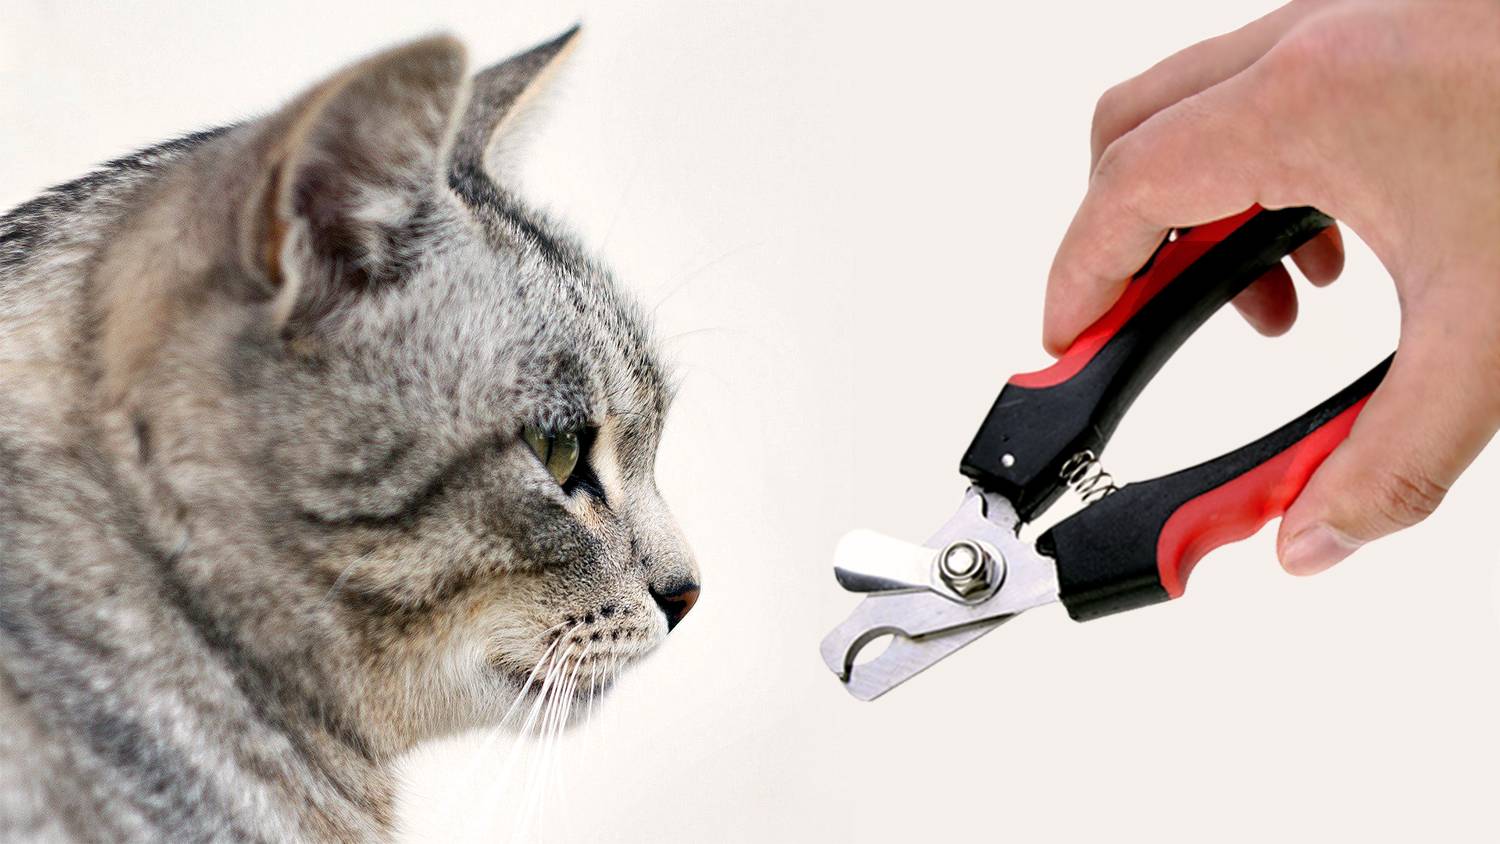 Как правильно подстричь когти кошке в домашних условиях, если она не даётся: можно ли стричь вообще?